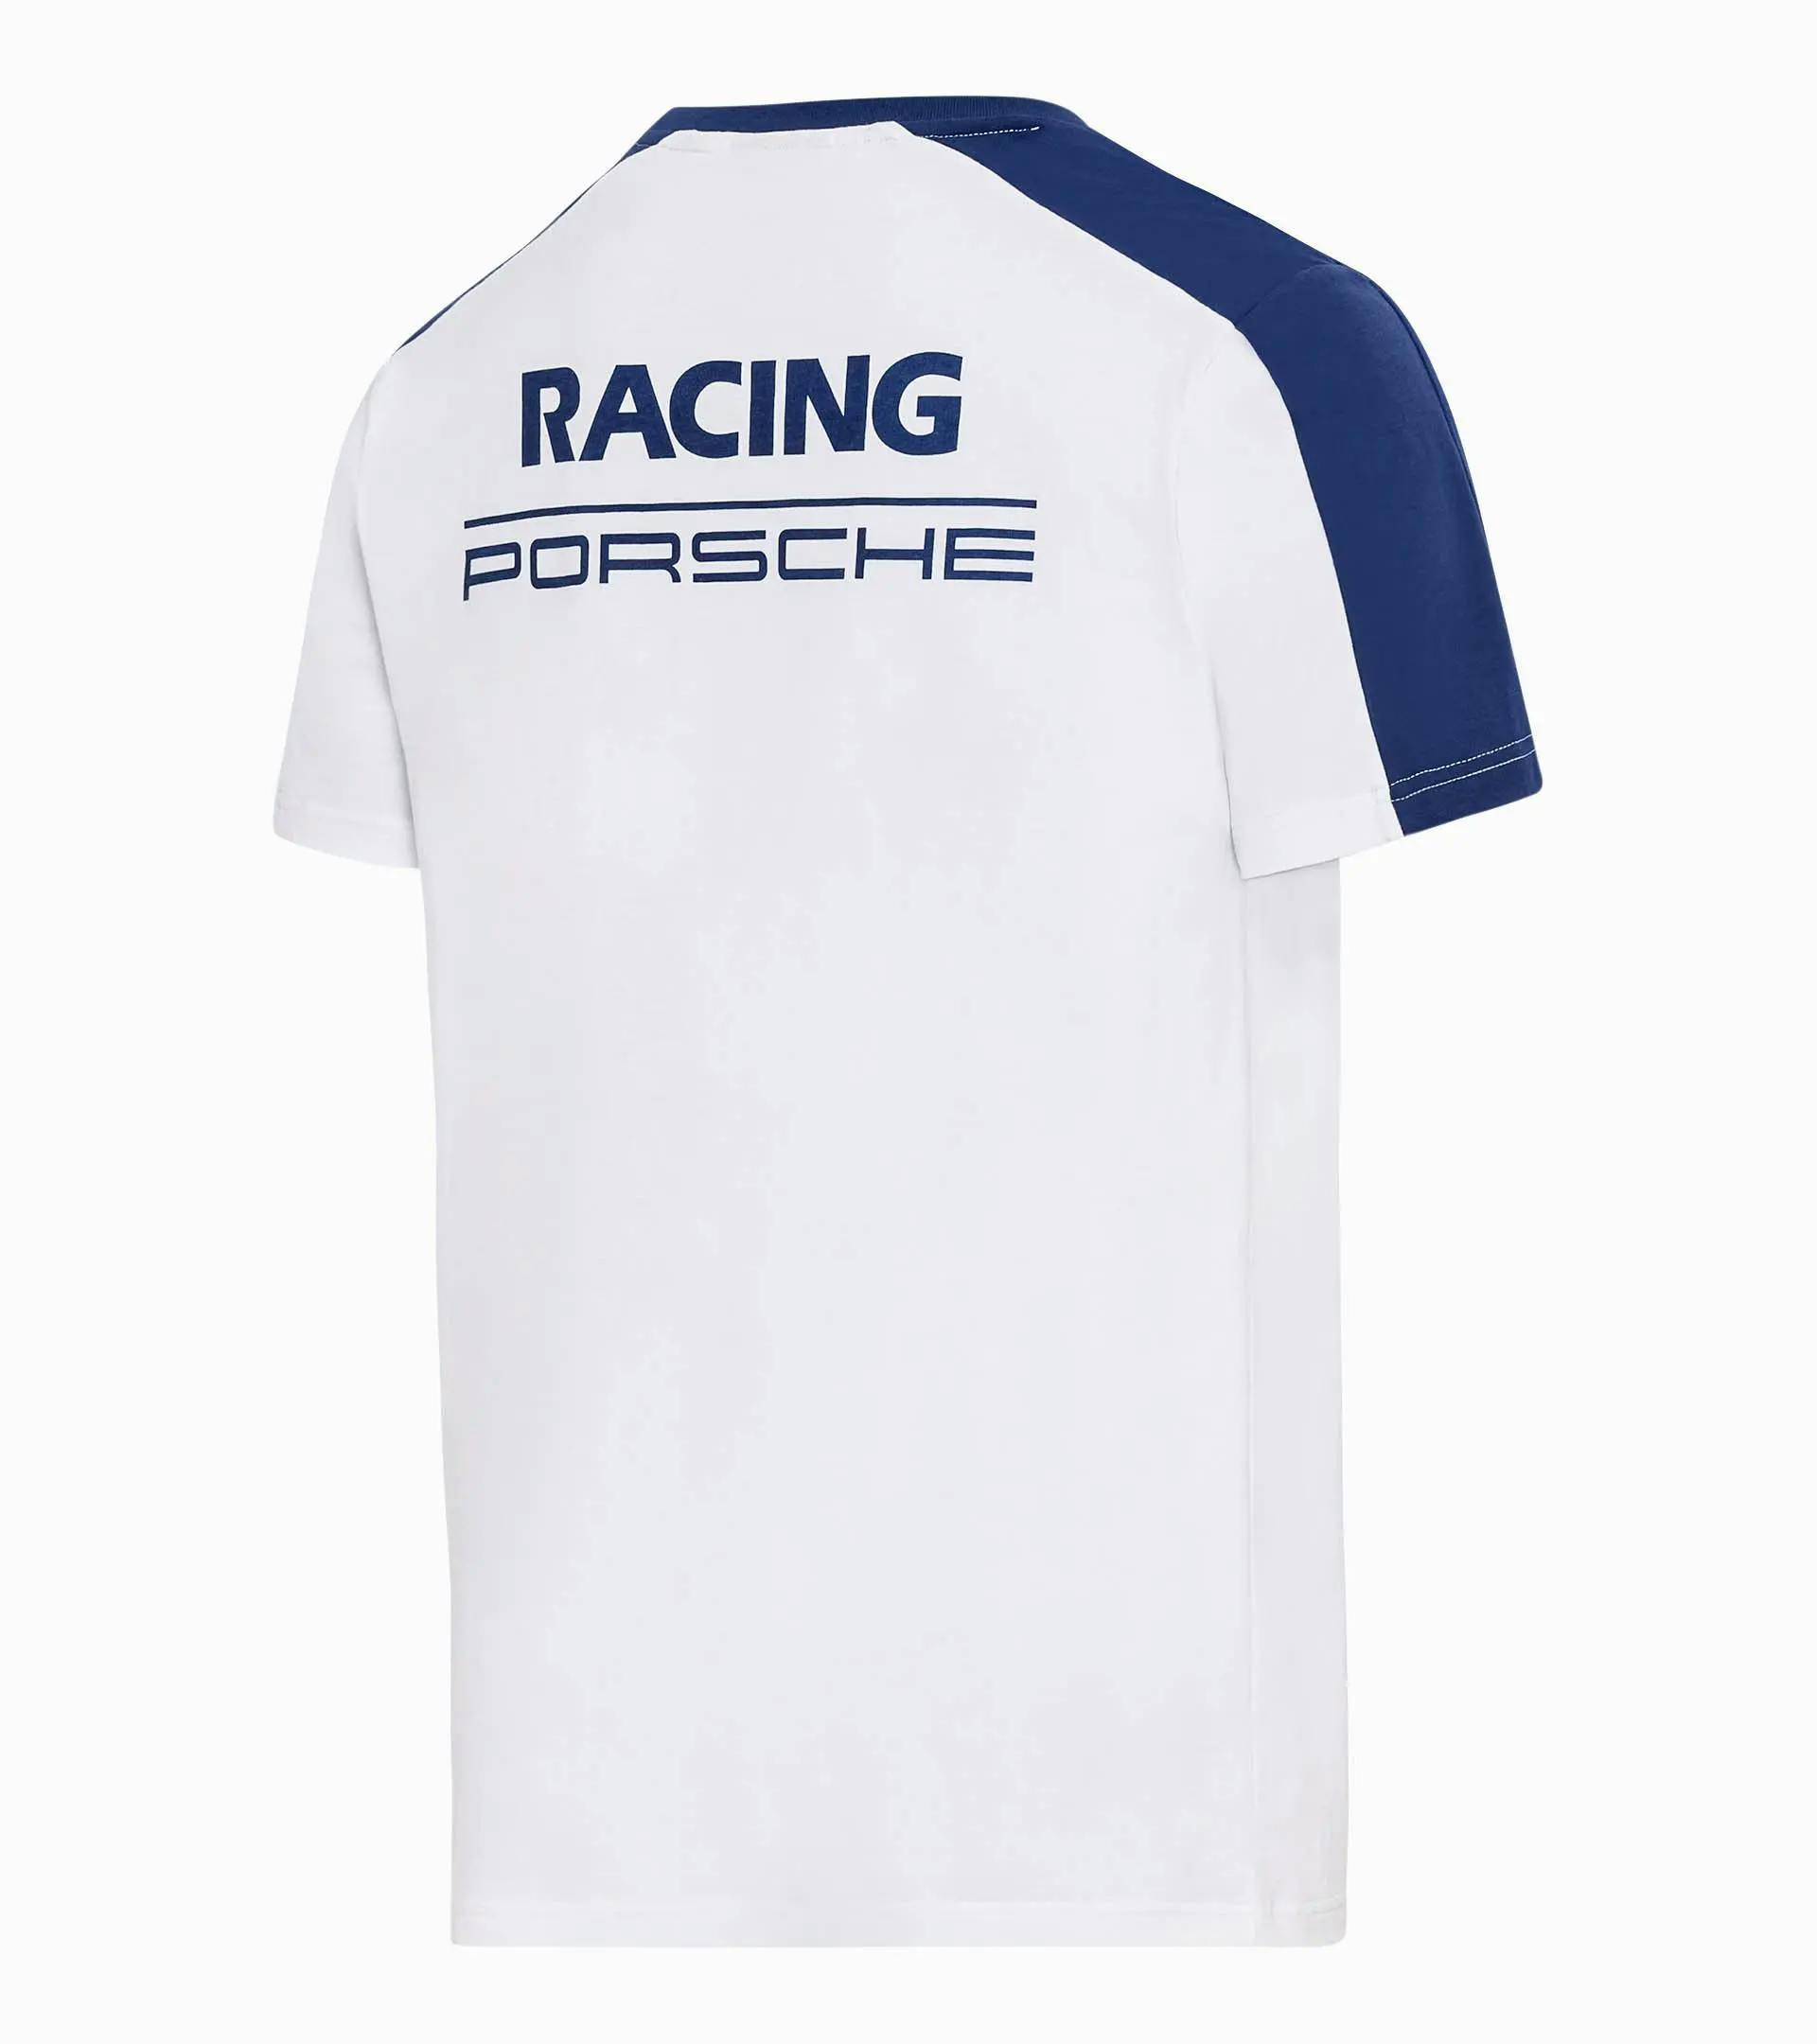 Men's T-shirt – Racing thumbnail 1